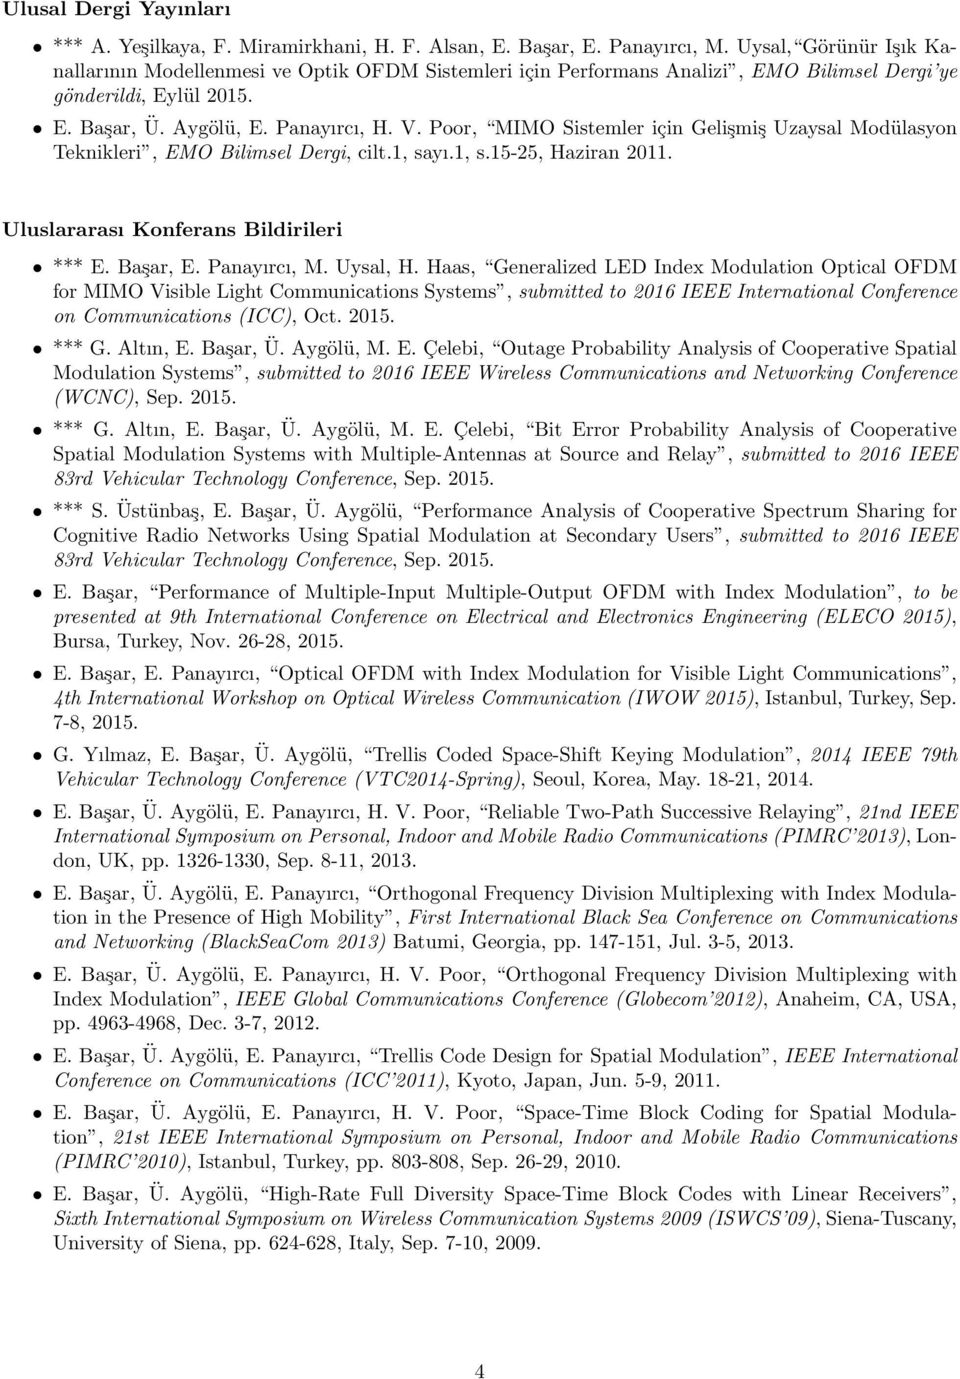 Poor, MIMO Sistemler için Gelişmiş Uzaysal Modülasyon Teknikleri, EMO Bilimsel Dergi, cilt.1, sayı.1, s.15-25, Haziran 2011. Uluslararası Konferans Bildirileri *** E. Başar, E. Panayırcı, M. Uysal, H.